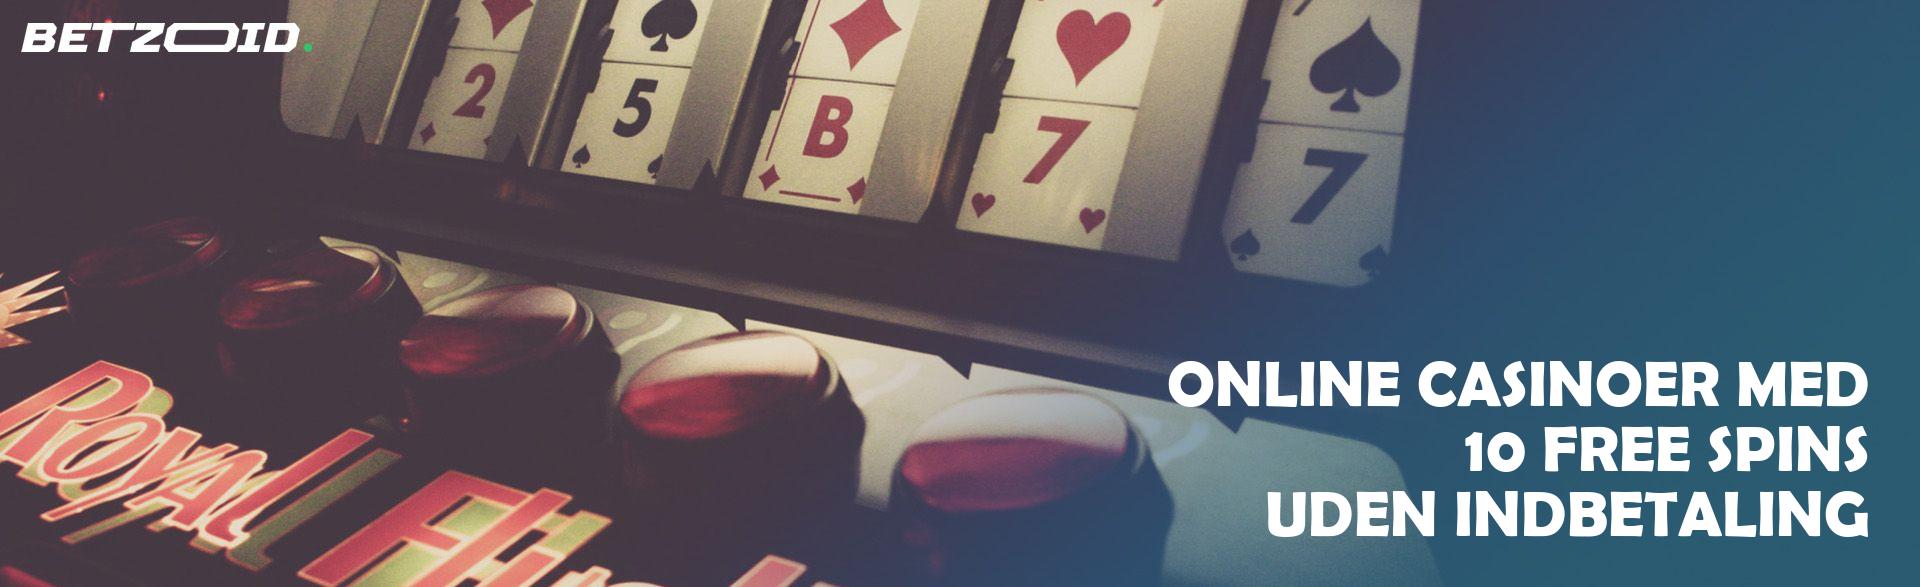 Online Casinoer med 10 Free Spins uden Indbetaling.